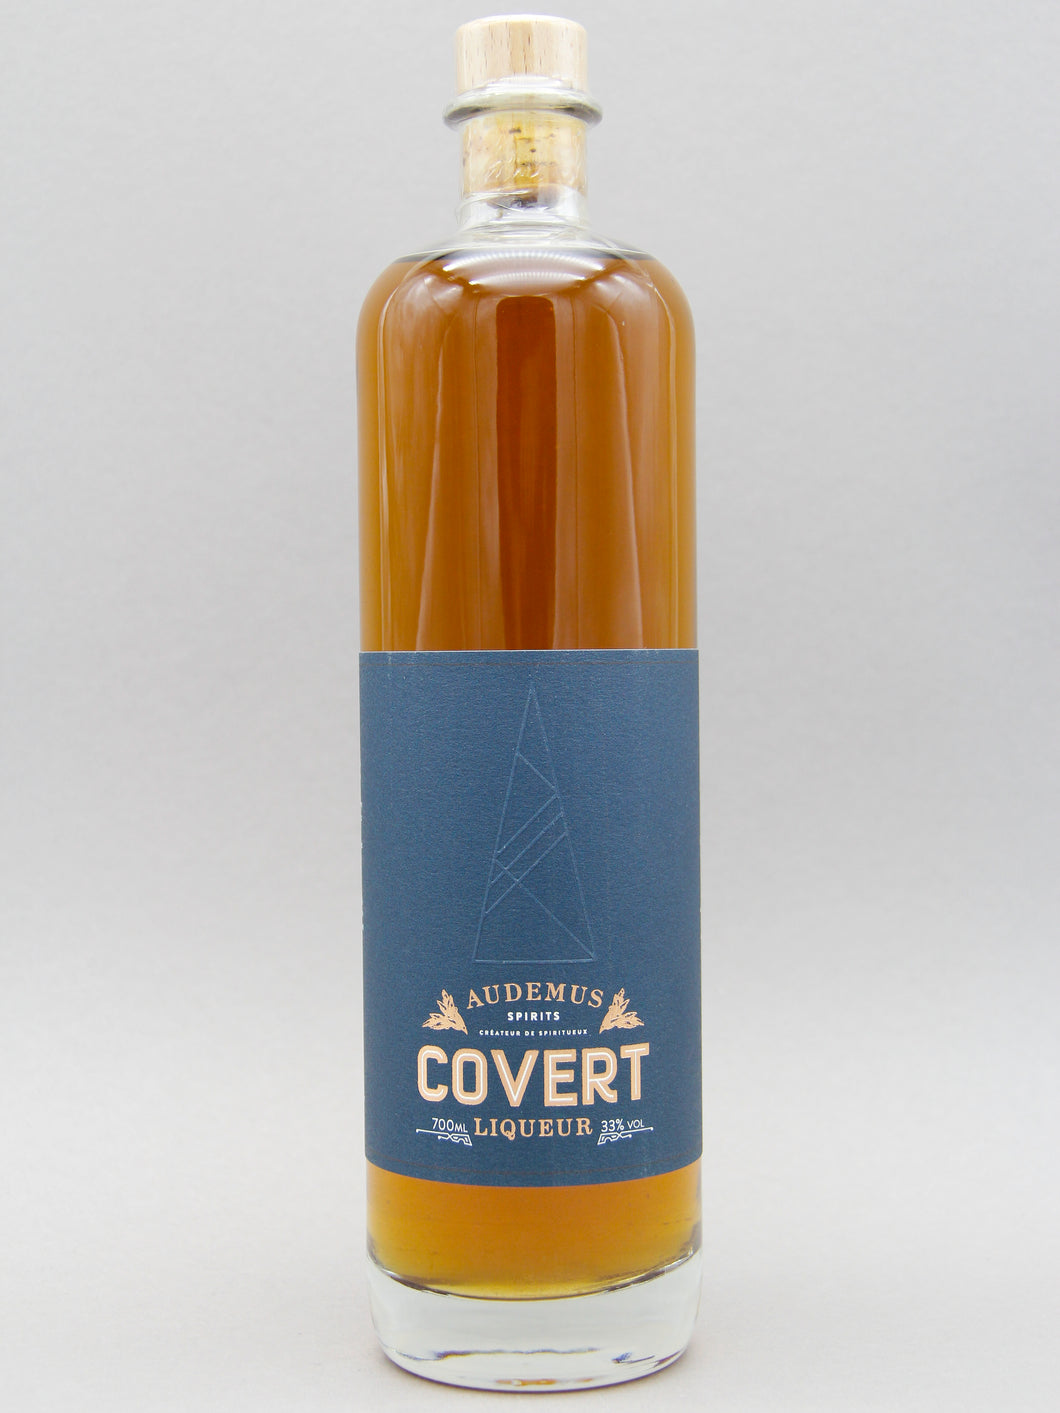 Audemus Spirits, Covert Liqueur, Cognac, France (33%, 70cl)